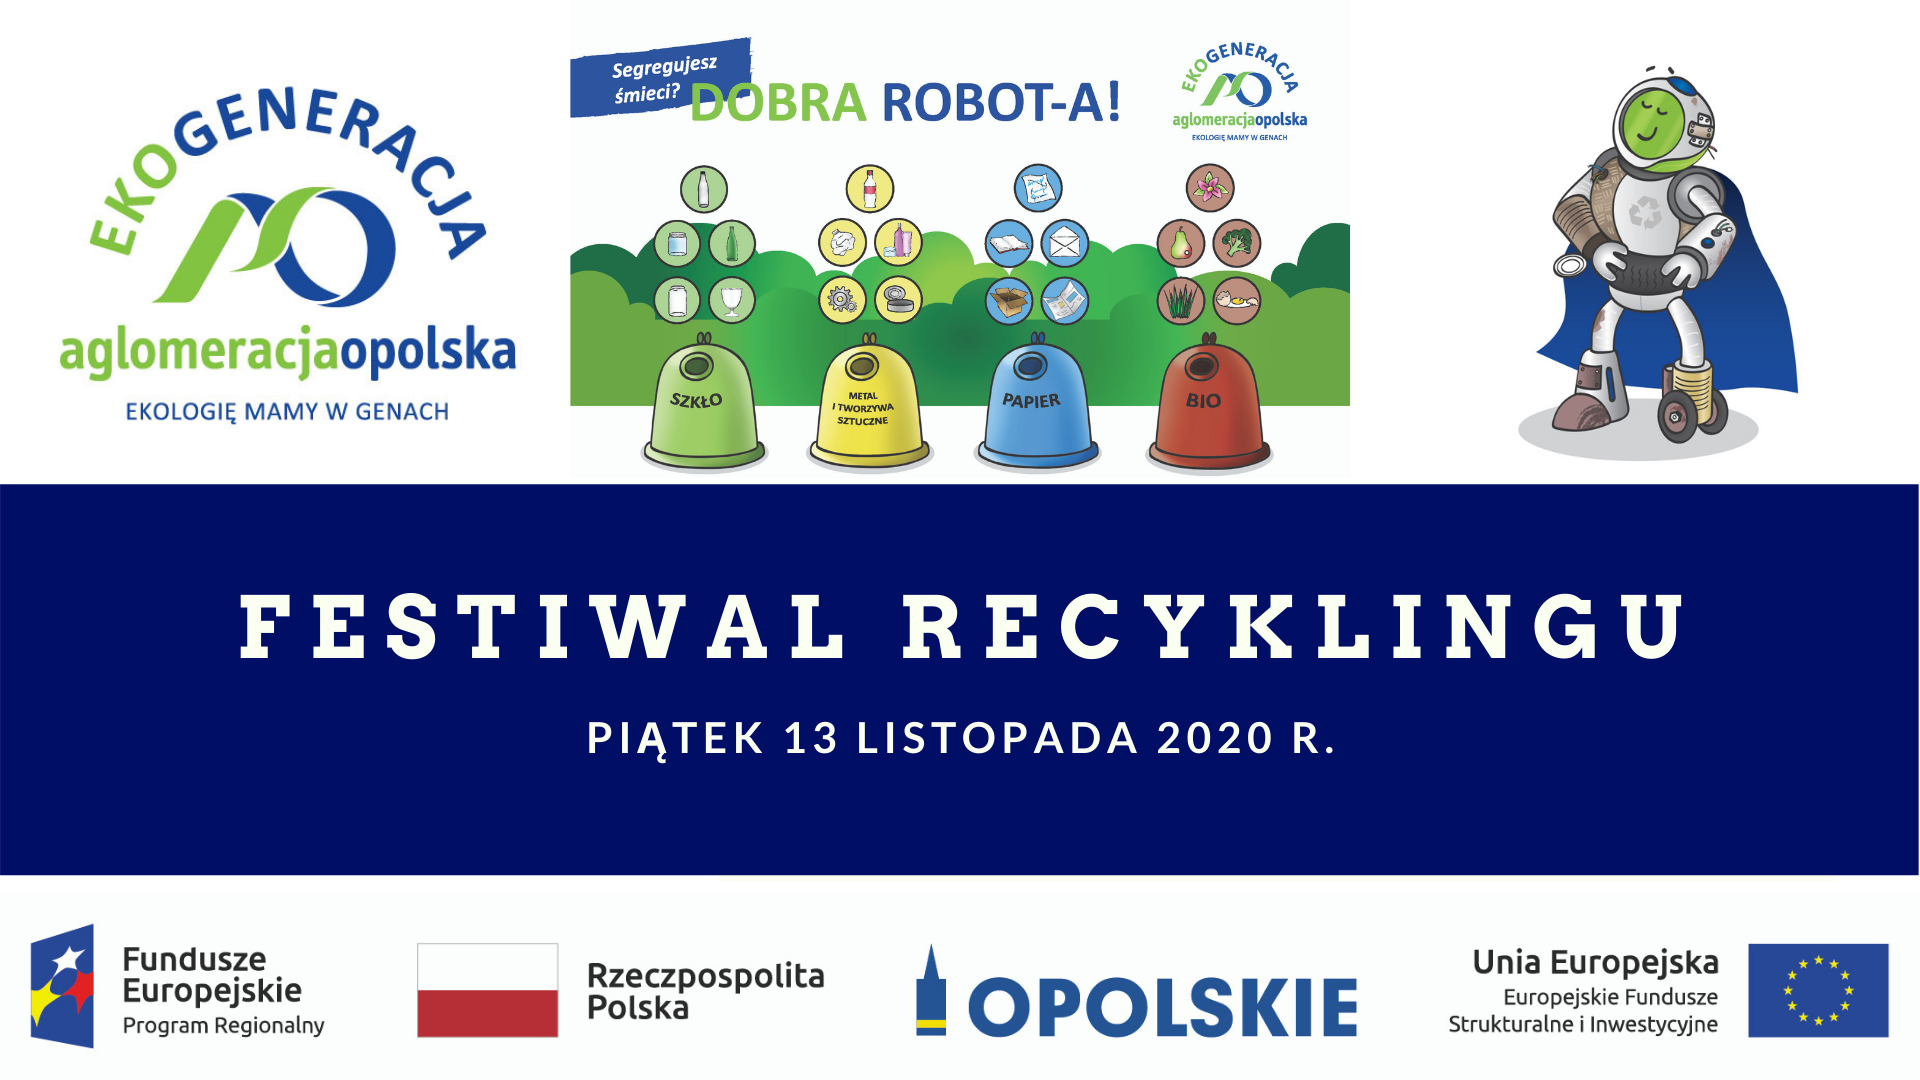 Festiwal recyklingu online &#8211; Stowarzyszenie Aglomeracja Opolska zaprasza